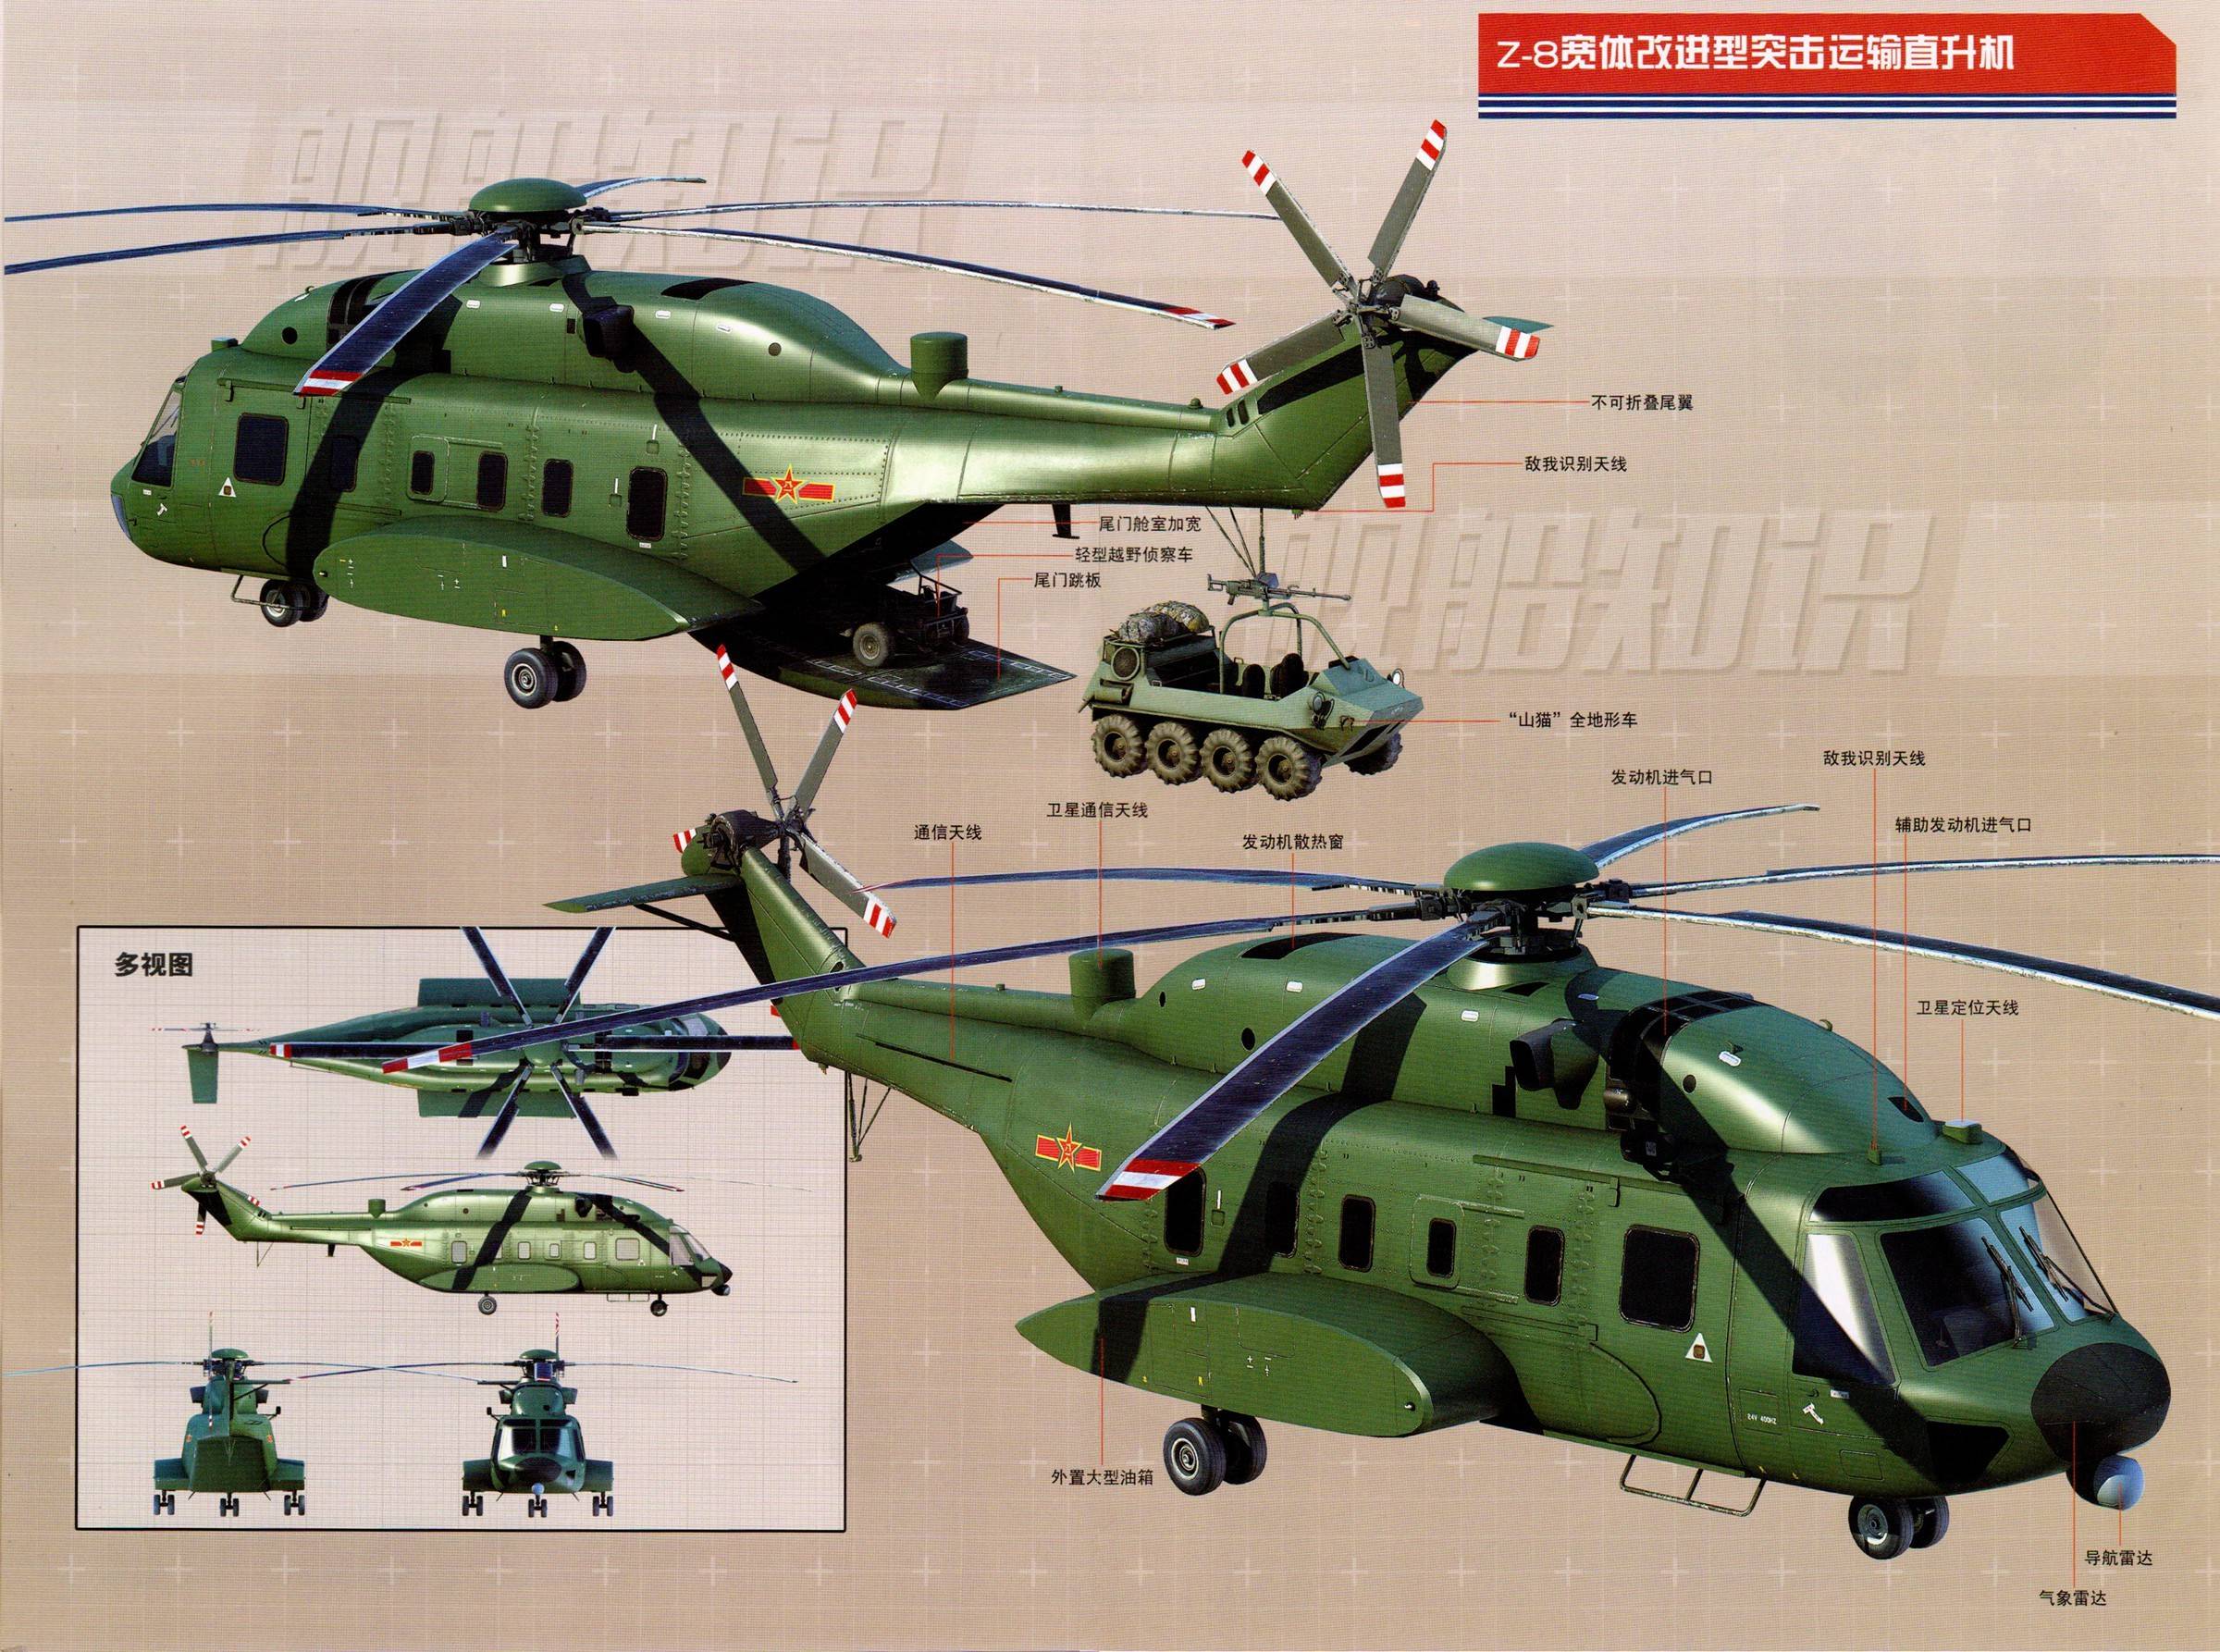 原创为山猫插上翅膀—直8l宽体直升机将和直-20组成完整的空中突击